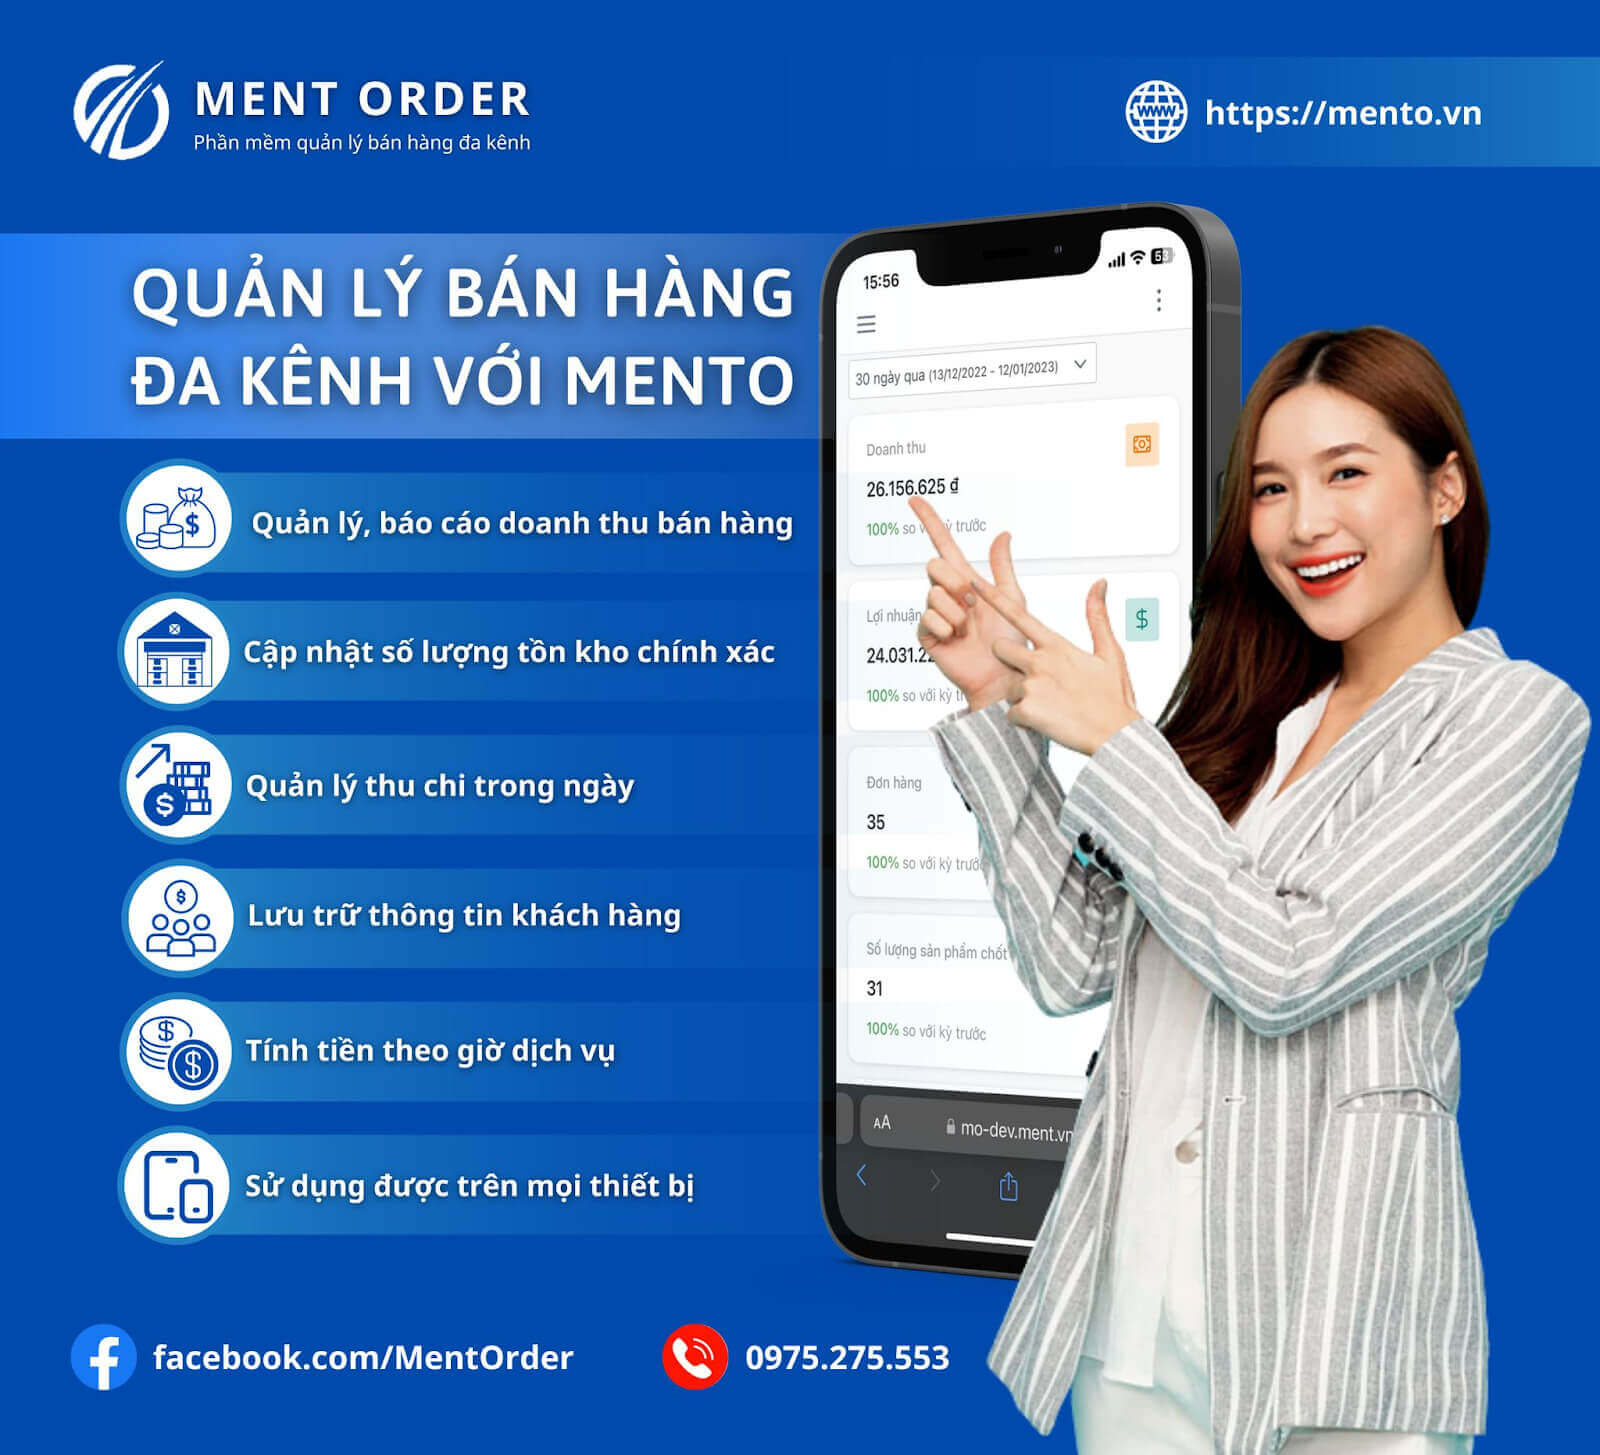 Quản lý shop bán hàng online dễ dàng với Mento.vn